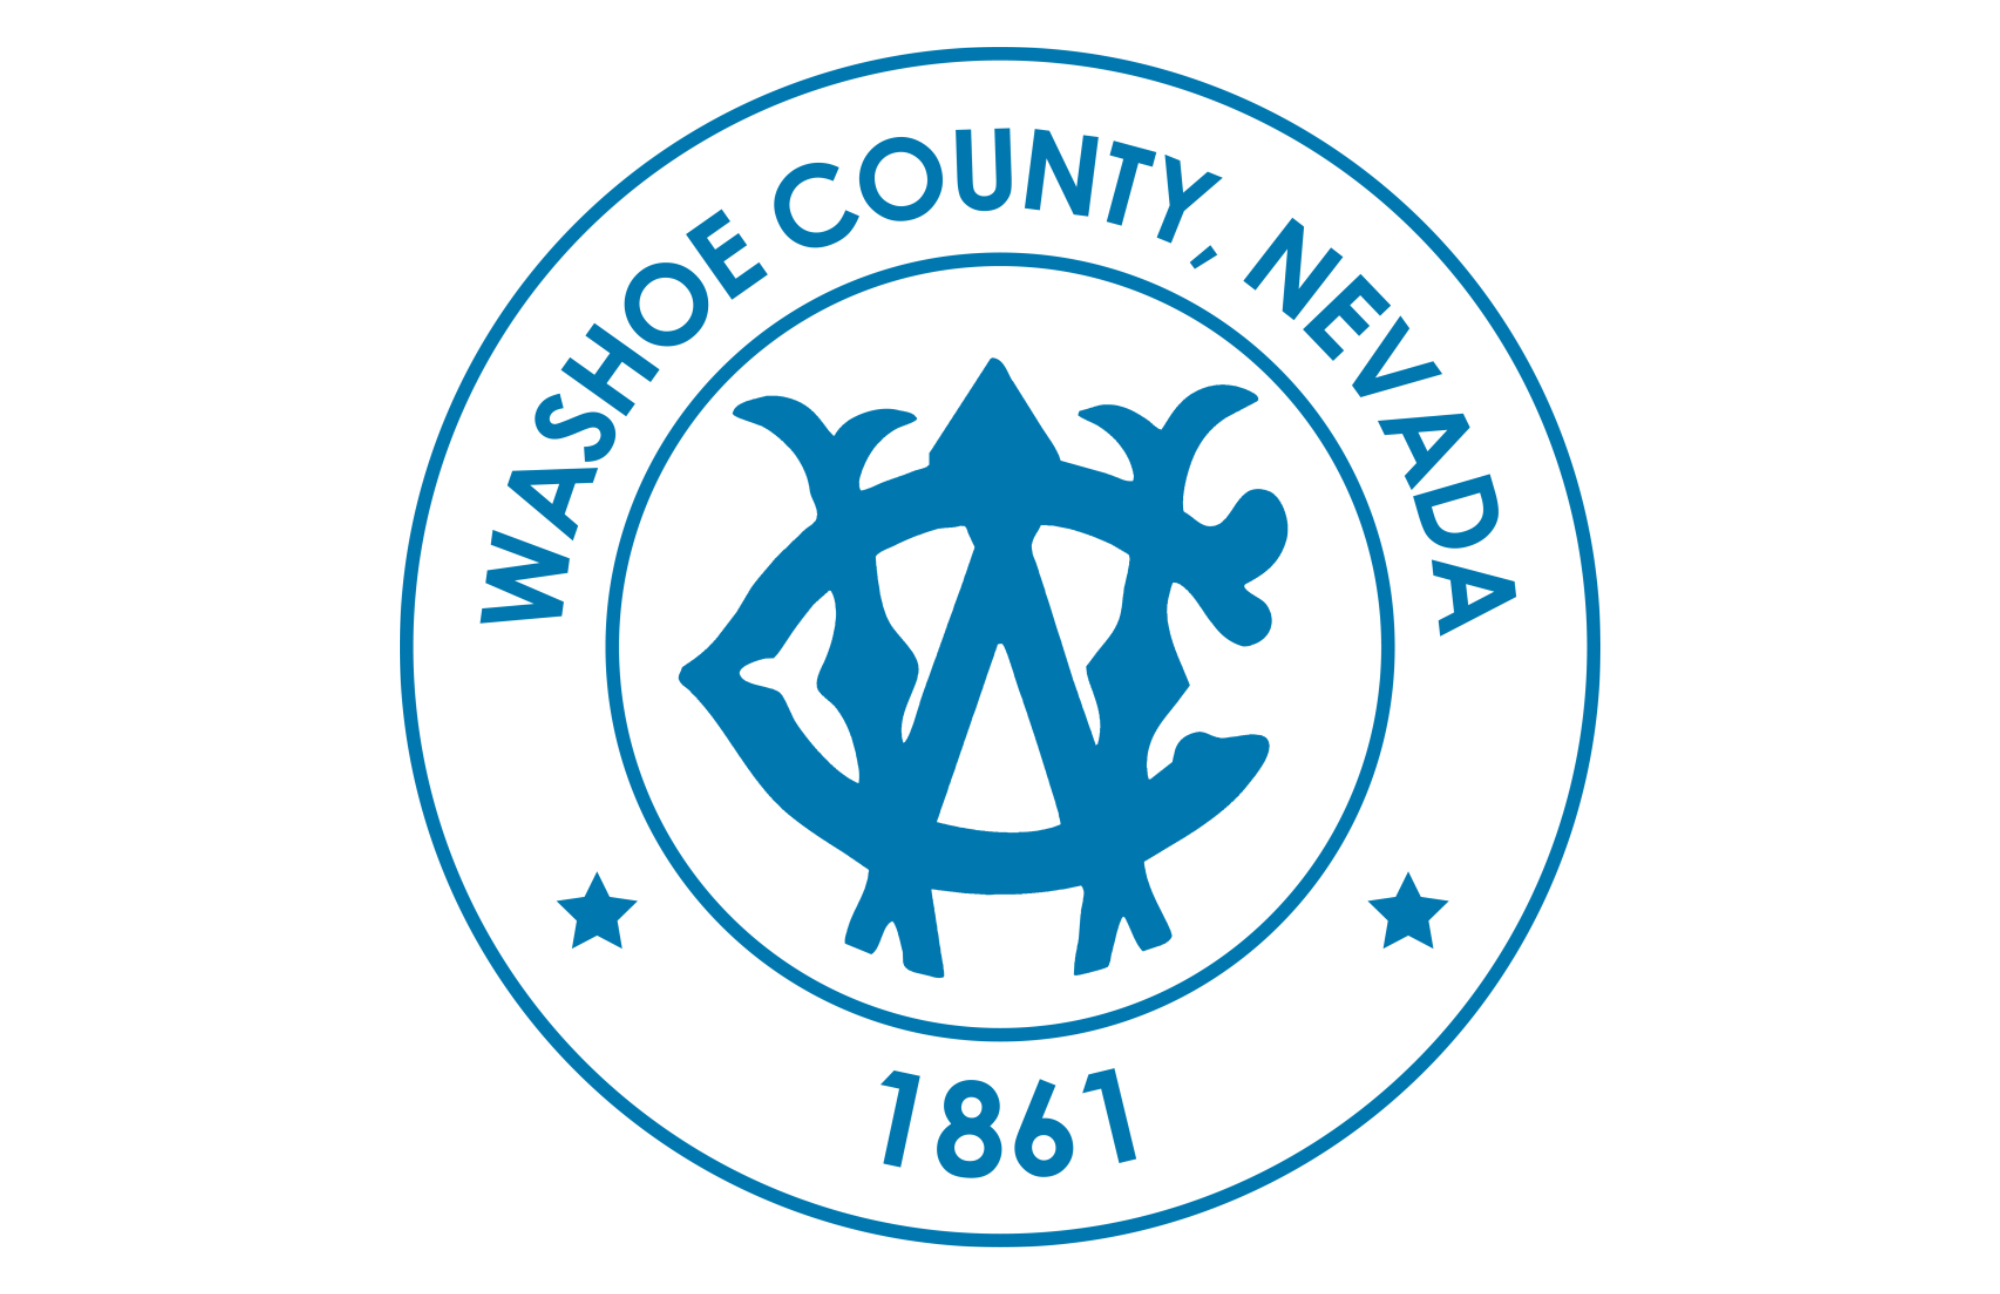 Blue and white Washoe County Nevada logo